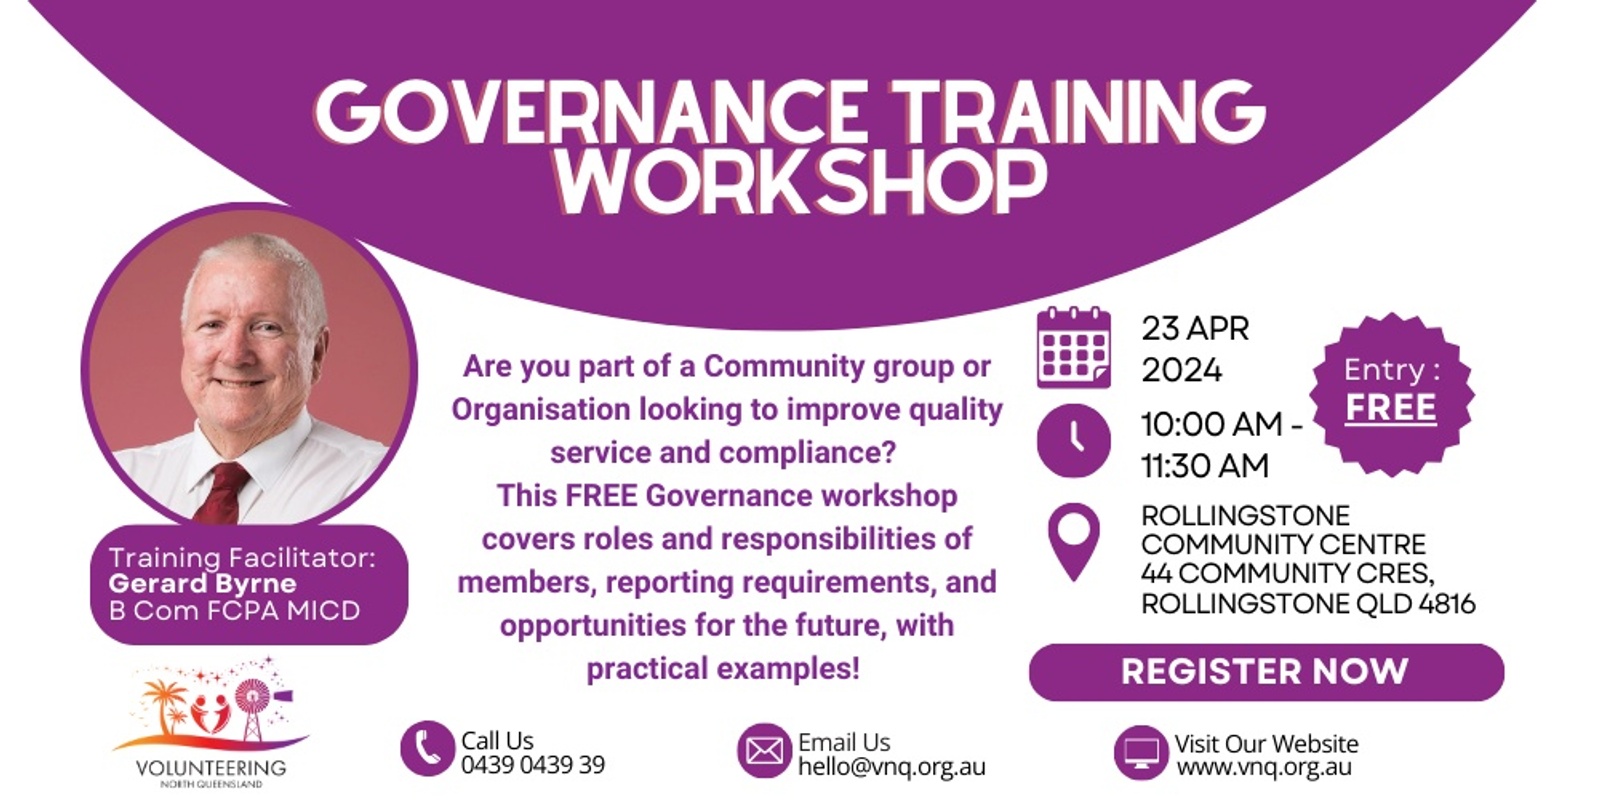 Banner image for Governance Training Workshop for Community Groups - With Gerard Byrne